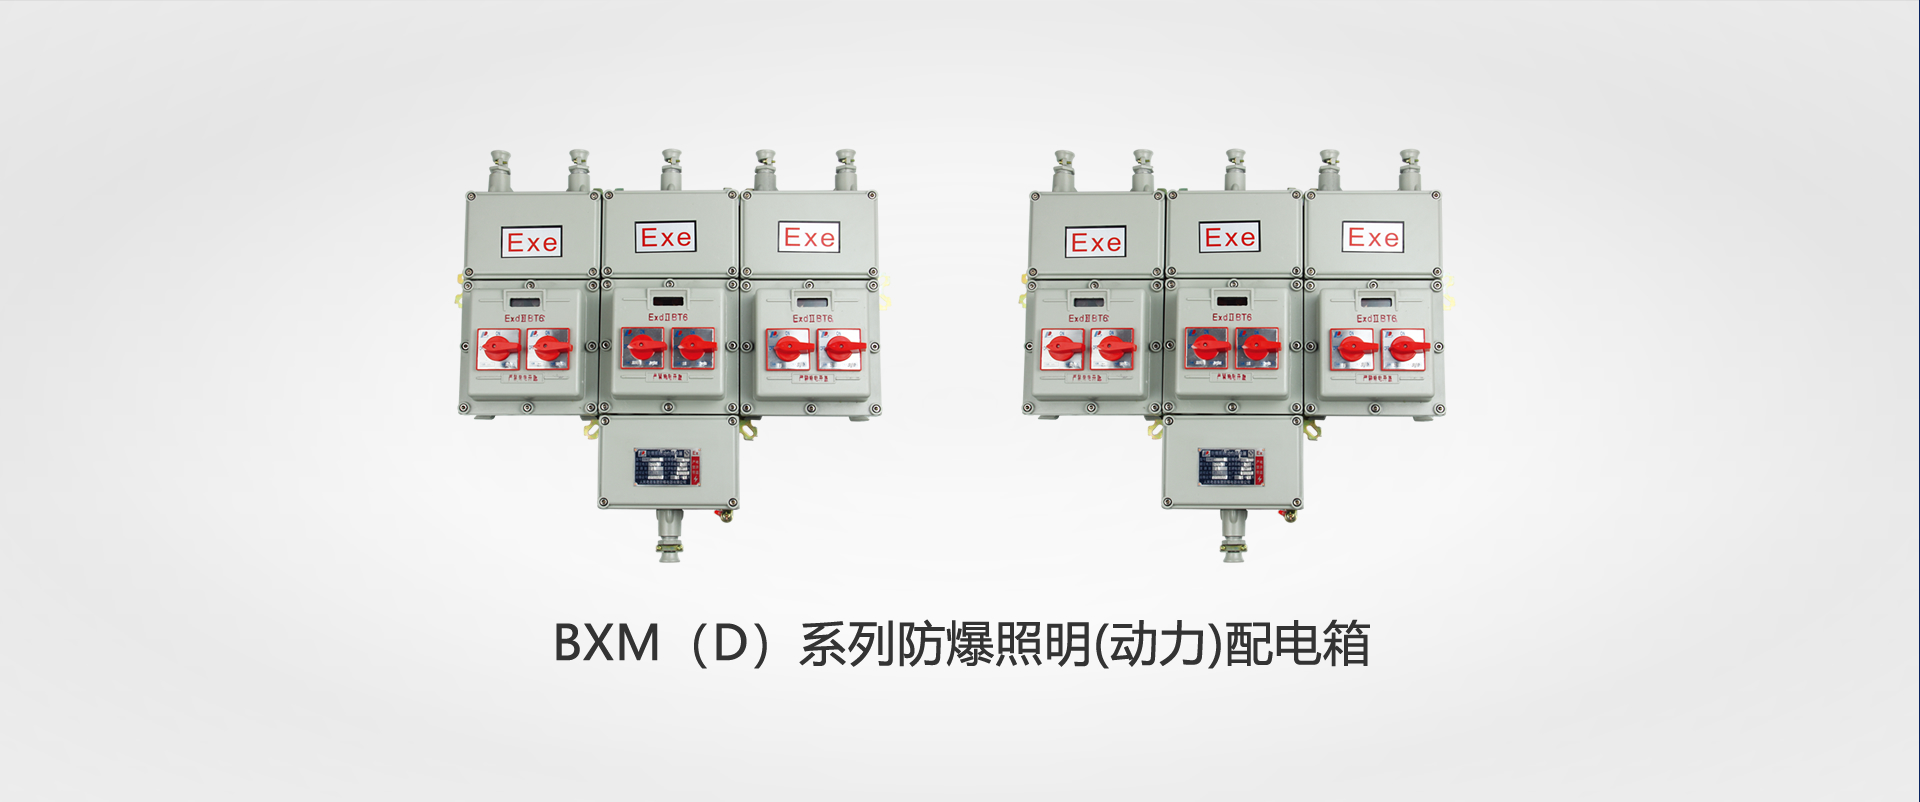 BXM（D）系列防爆照明(動力)配(pei)電箱